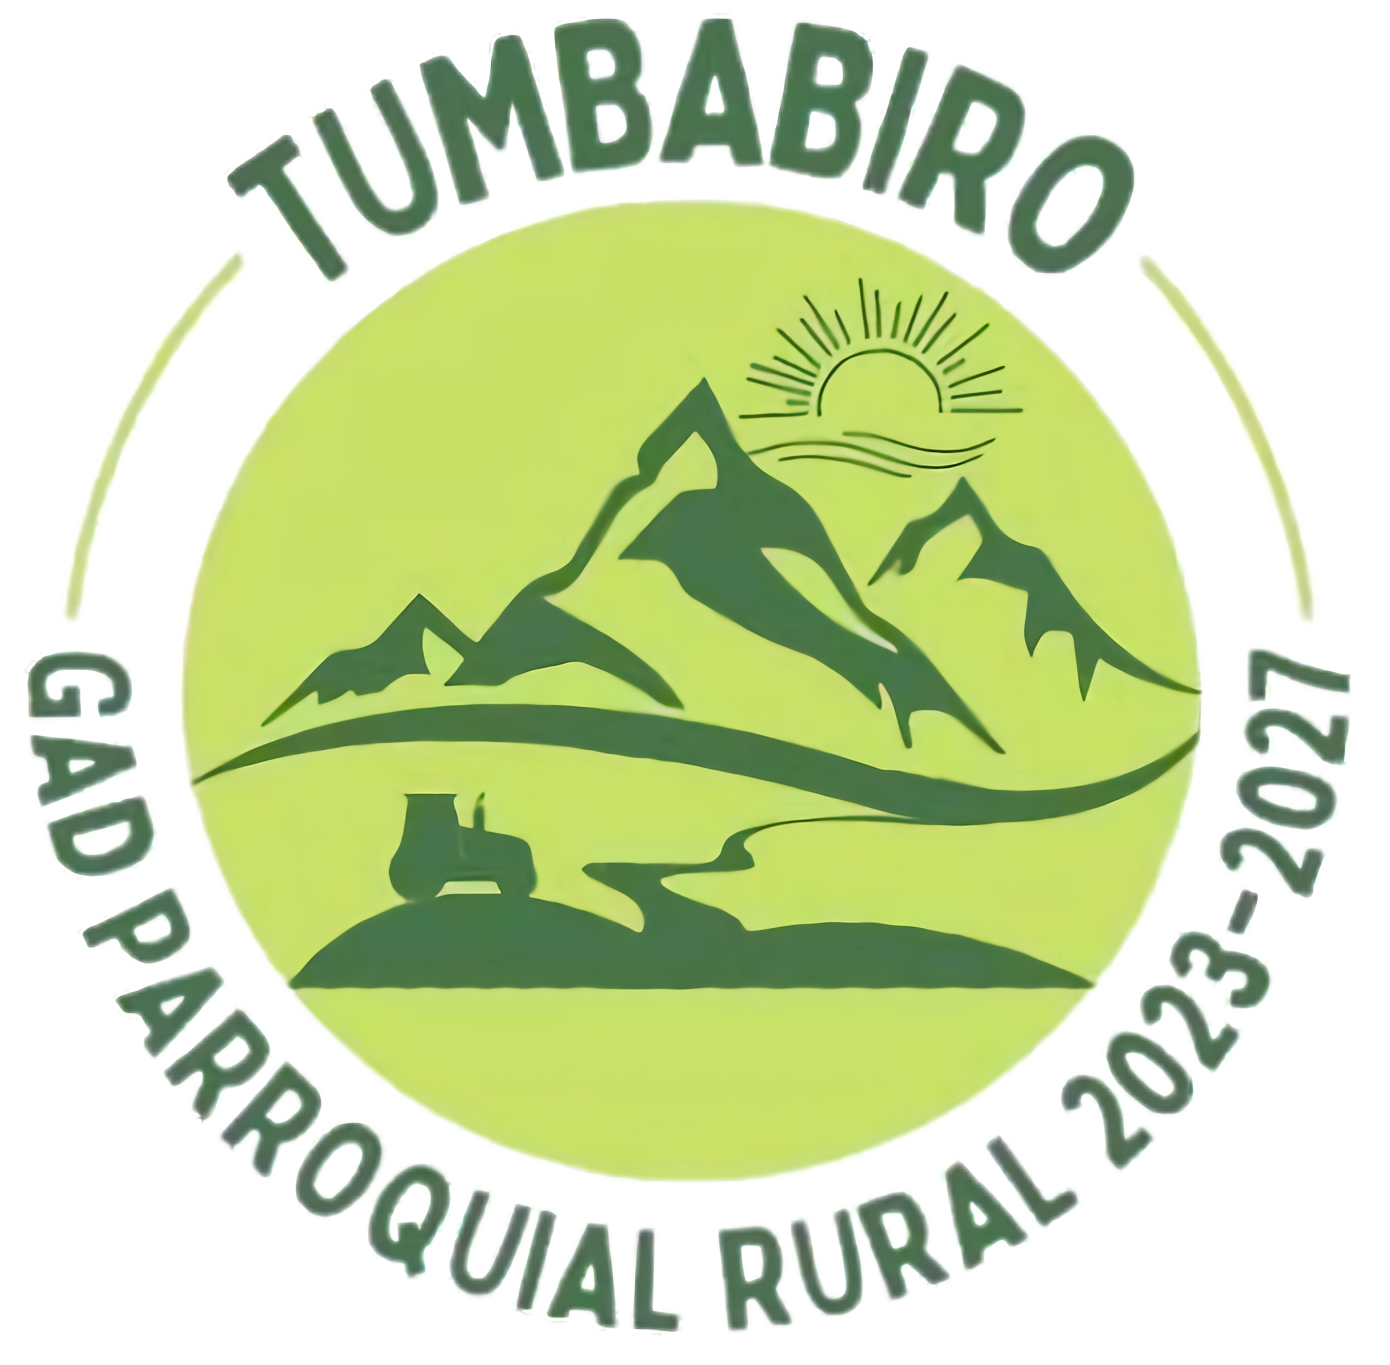 Gobierno Parroquial de Tumbabiro